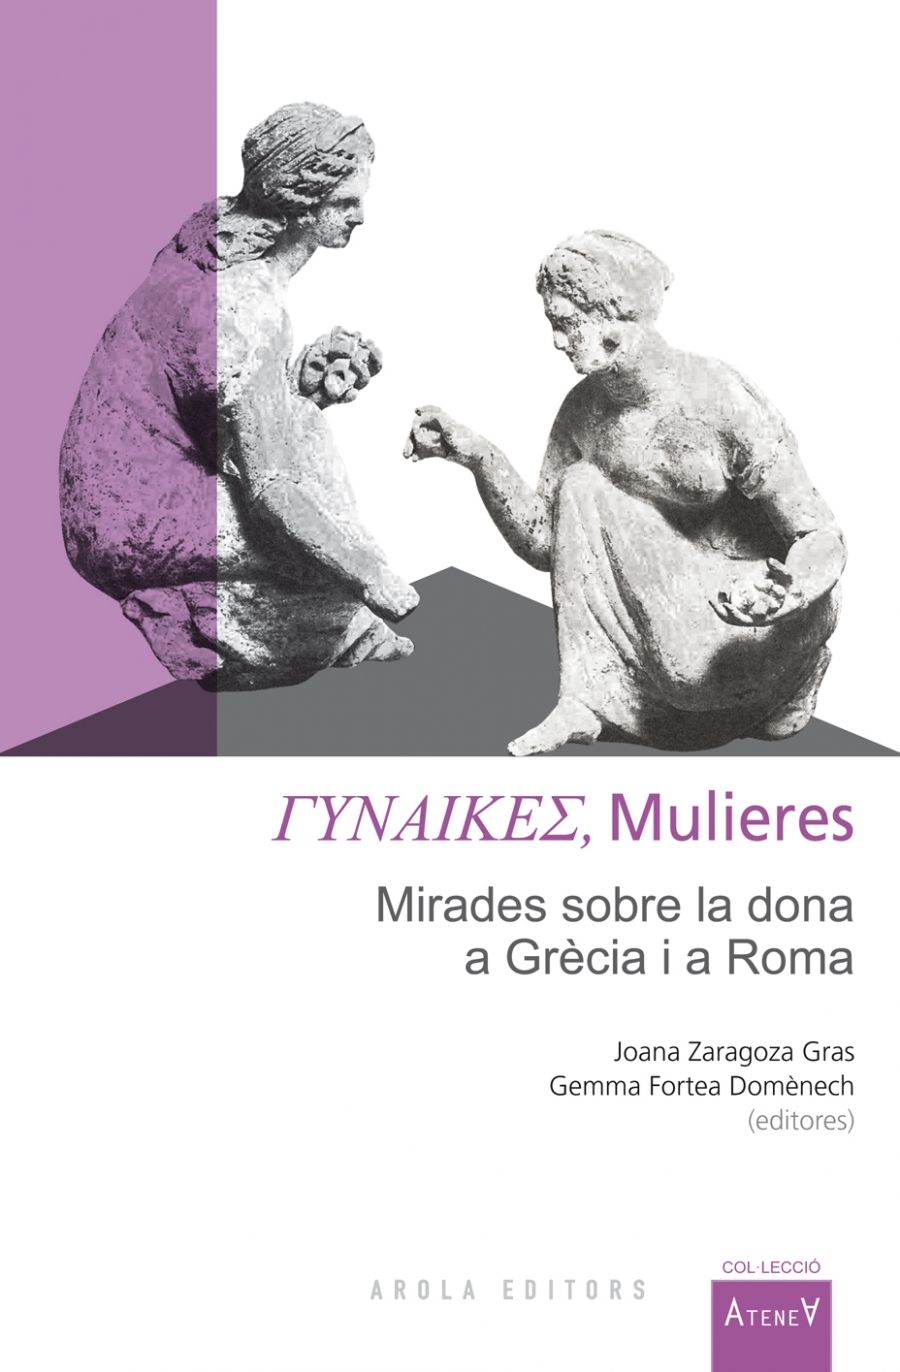 Imagen de portada del libro Gynaikes = Mulieres